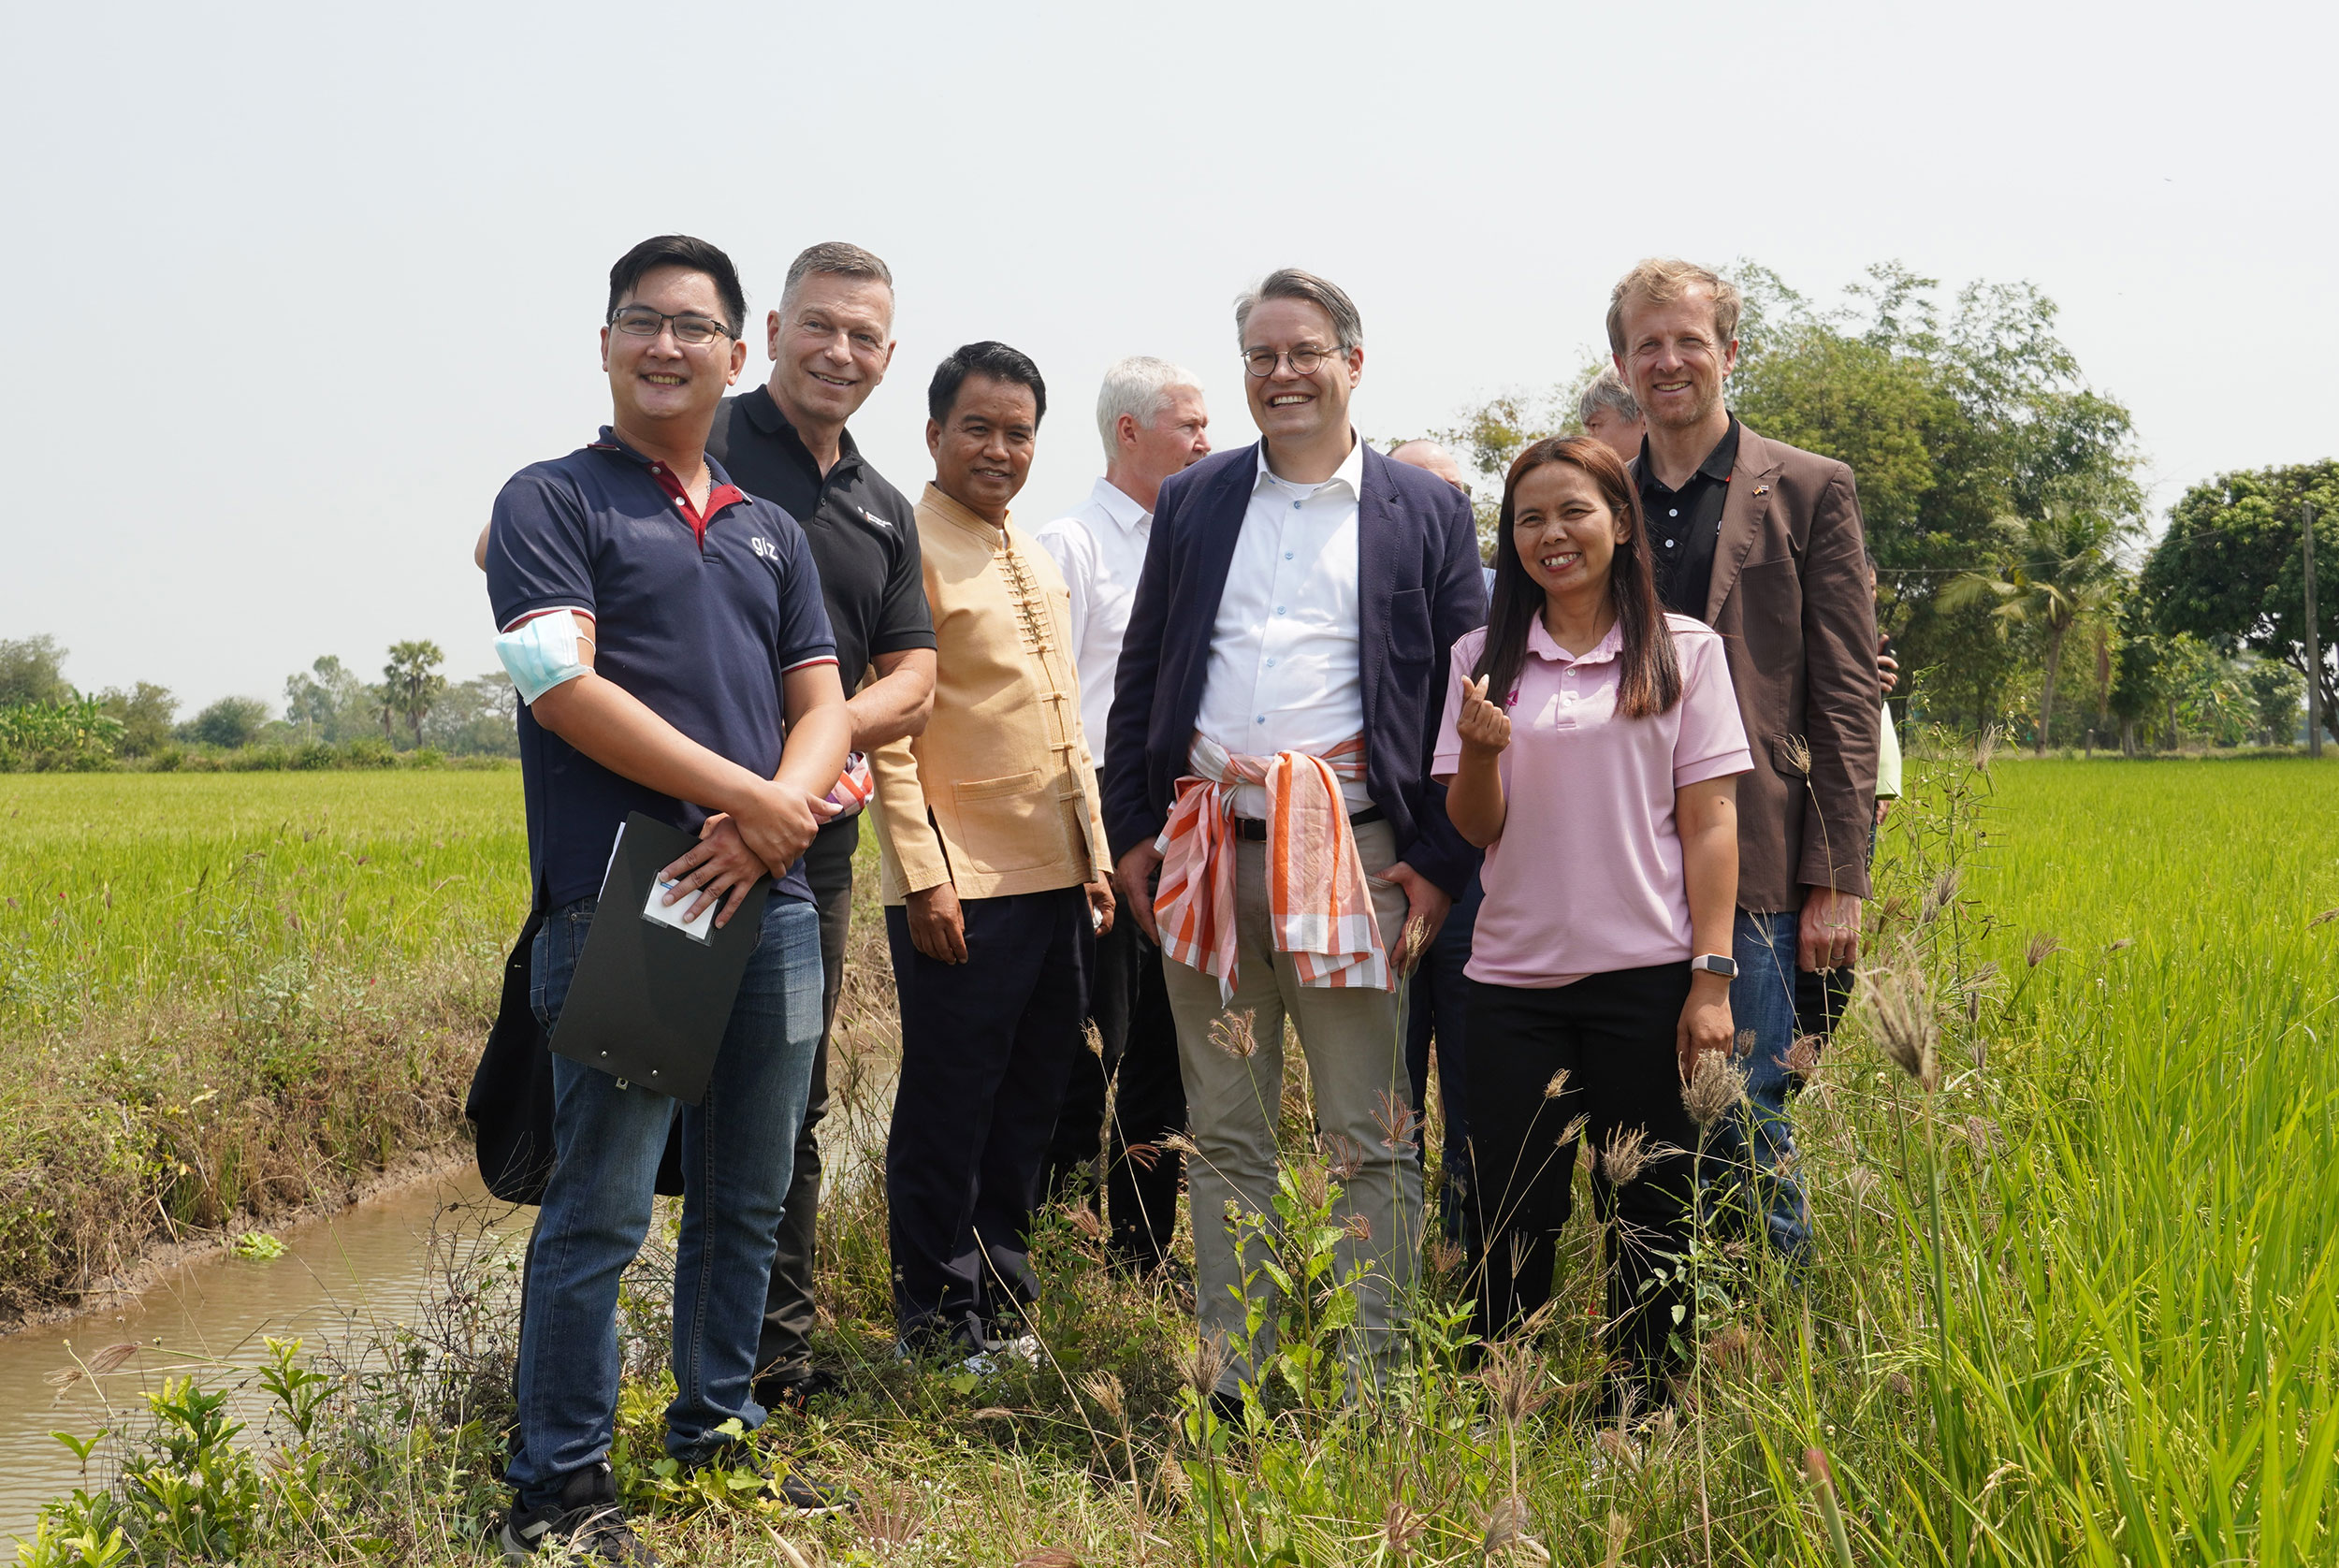 Sawanee Phorang (right) led Dr Tobias Lindner (centre) to Thai Rice NAMA demonstration site in Doem Bang Nang Buat district, Suphanburi province. (ซ้ายไปขวา：คุณธนศิษฎ์ สถาปนพิทักษ์กิจ ที่ปรึกษาด้านการเงินภาคสนาม GIZ ประเทศไทย คุณฮันส์-อูลริค ซูเบ็ค อัครราชทูตและหัวหน้าฝ่ายเศรษฐกิจสถานเอกอัครราชทูตเยอรมนีประจำประเทศไทย คุณชิษณุชา บุดดาบุญ ผู้อำนวยการสำนักนโยบายและยุทธศาสตร์ข้าว ดร.โทบิอัส ลินด์เนอร์ รัฐมนตรีช่วยประจำสำนักรัฐมนตรีกระทรวงการต่างประเทศ สหพันธ์สาธารณรัฐเยอรมนี คุณไรน์โฮลด์ เอลเกส ผู้อำนวยการ GIZ ประเทศไทย และคุณสวณีย์ โพธิ์รัง เกษตรกรสตรี สมาชิกโครงการไทย ไรซ์ นามา)